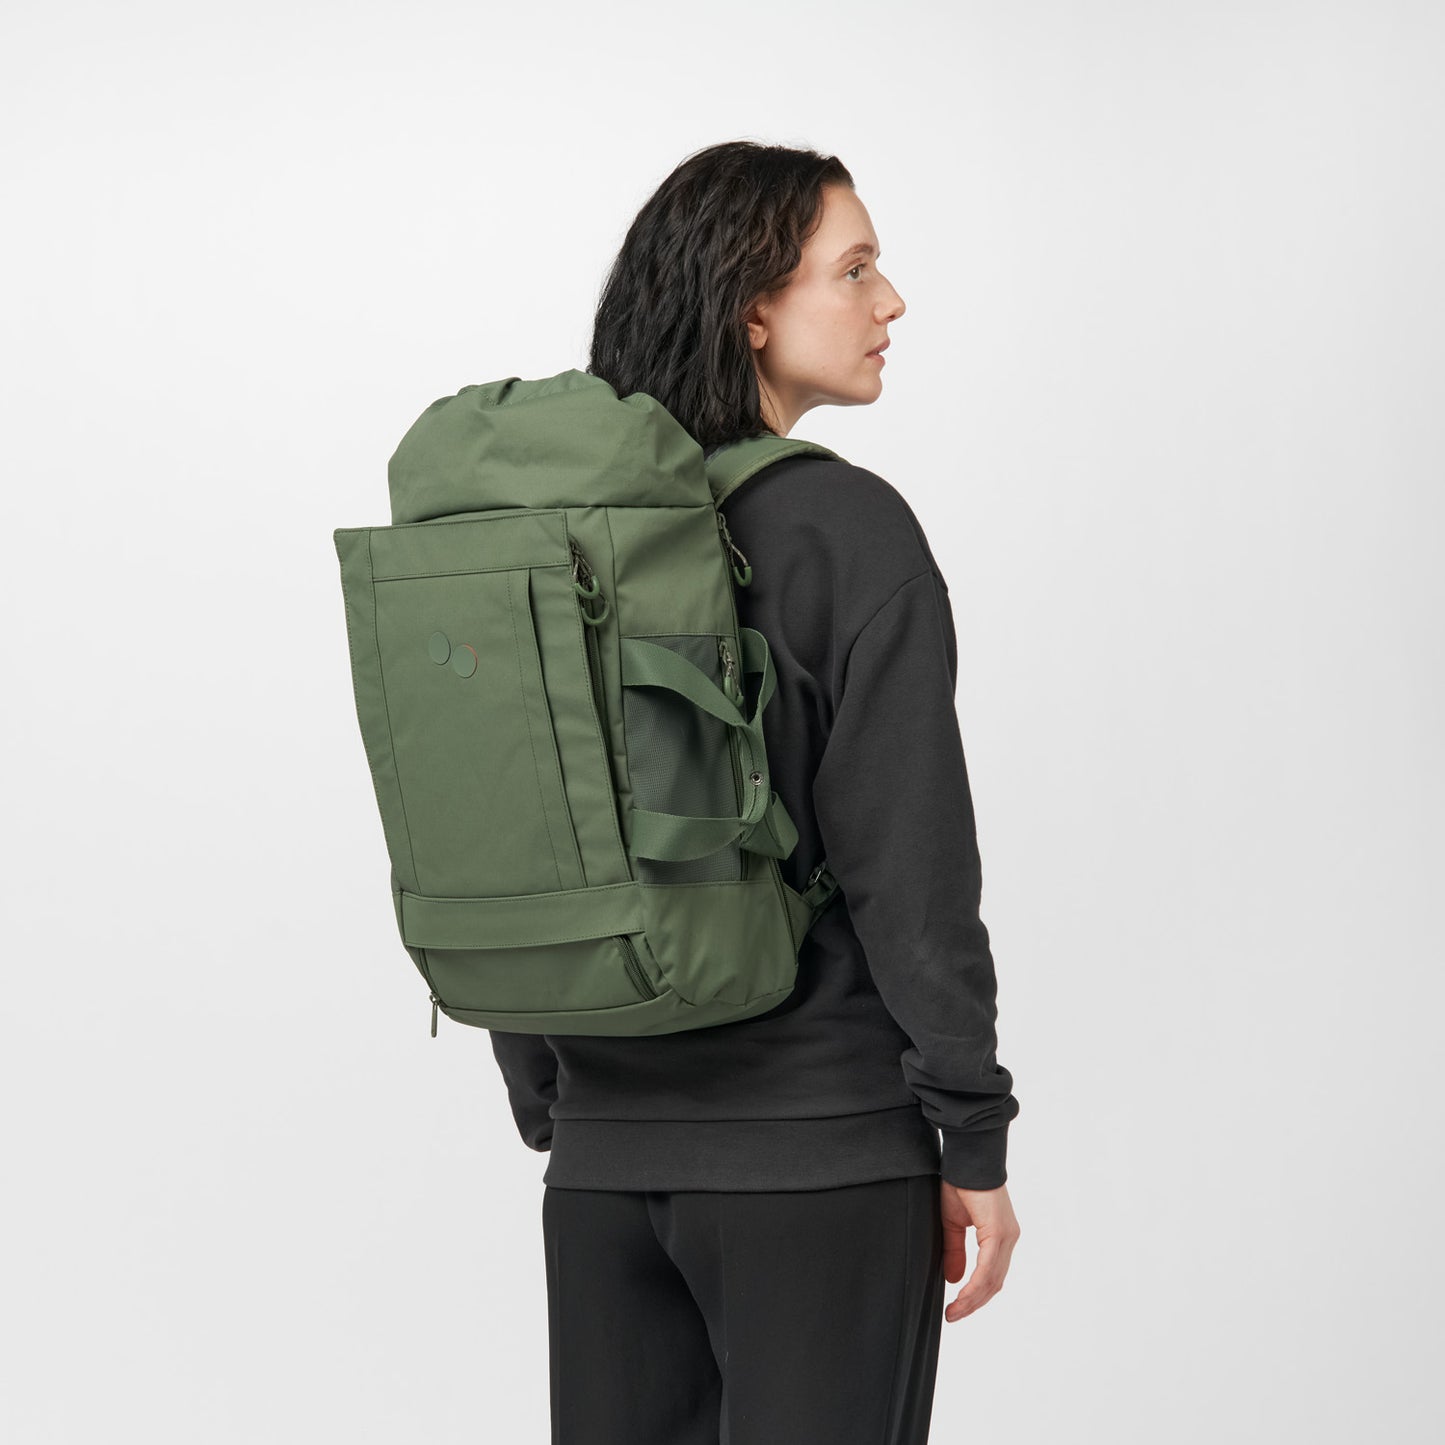 pinqponq-backpack-Blok-Medium-Forester-Olive-model-side